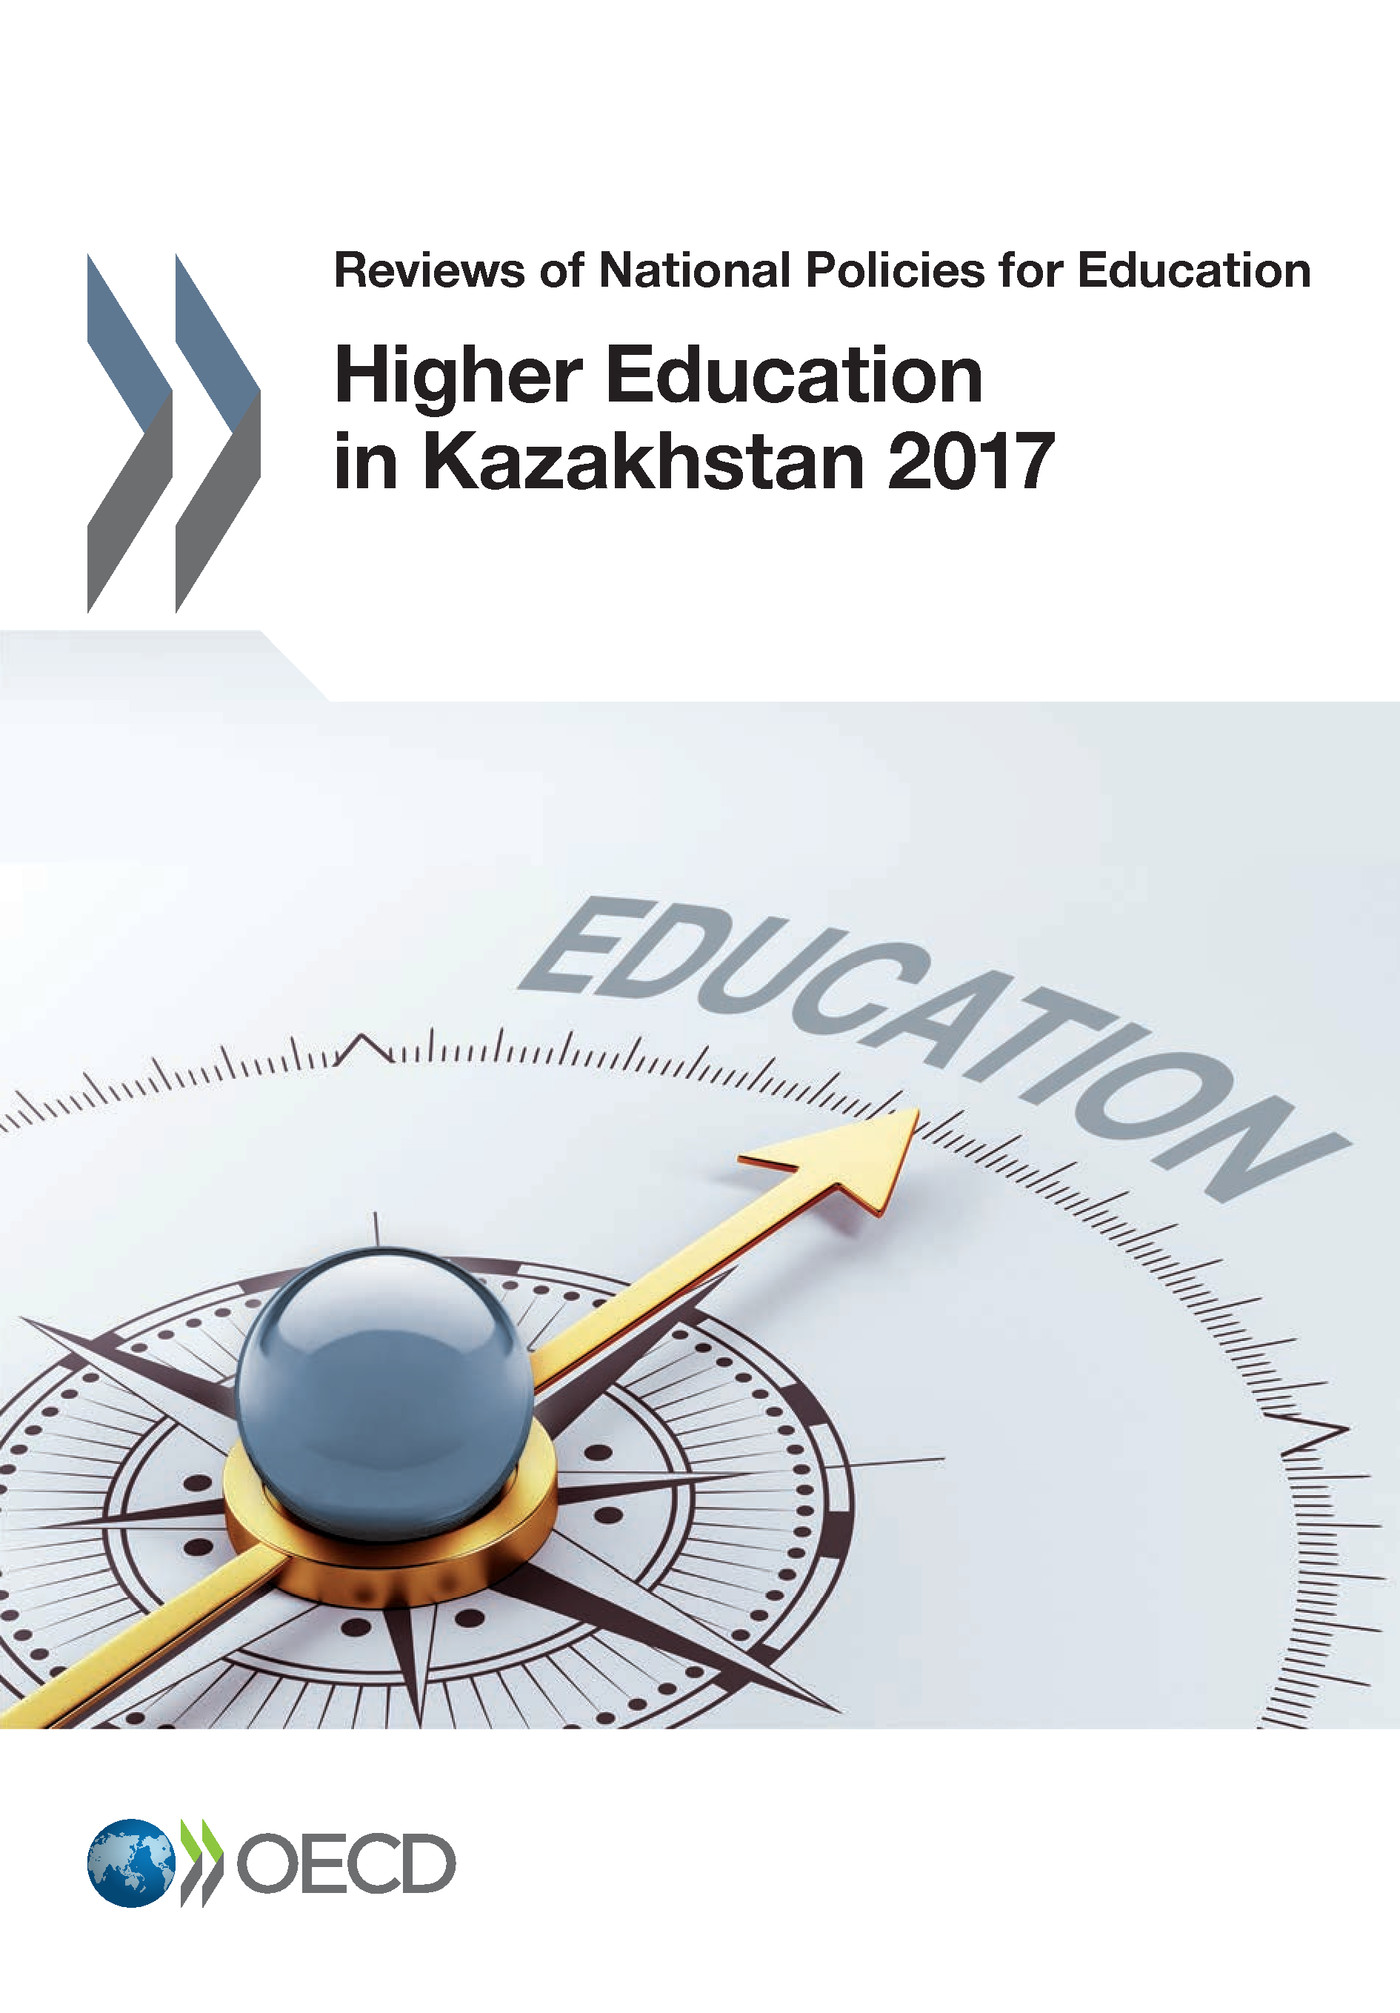 Higher Education in Kazakhstan 2017 -  Collectif - OCDE / OECD